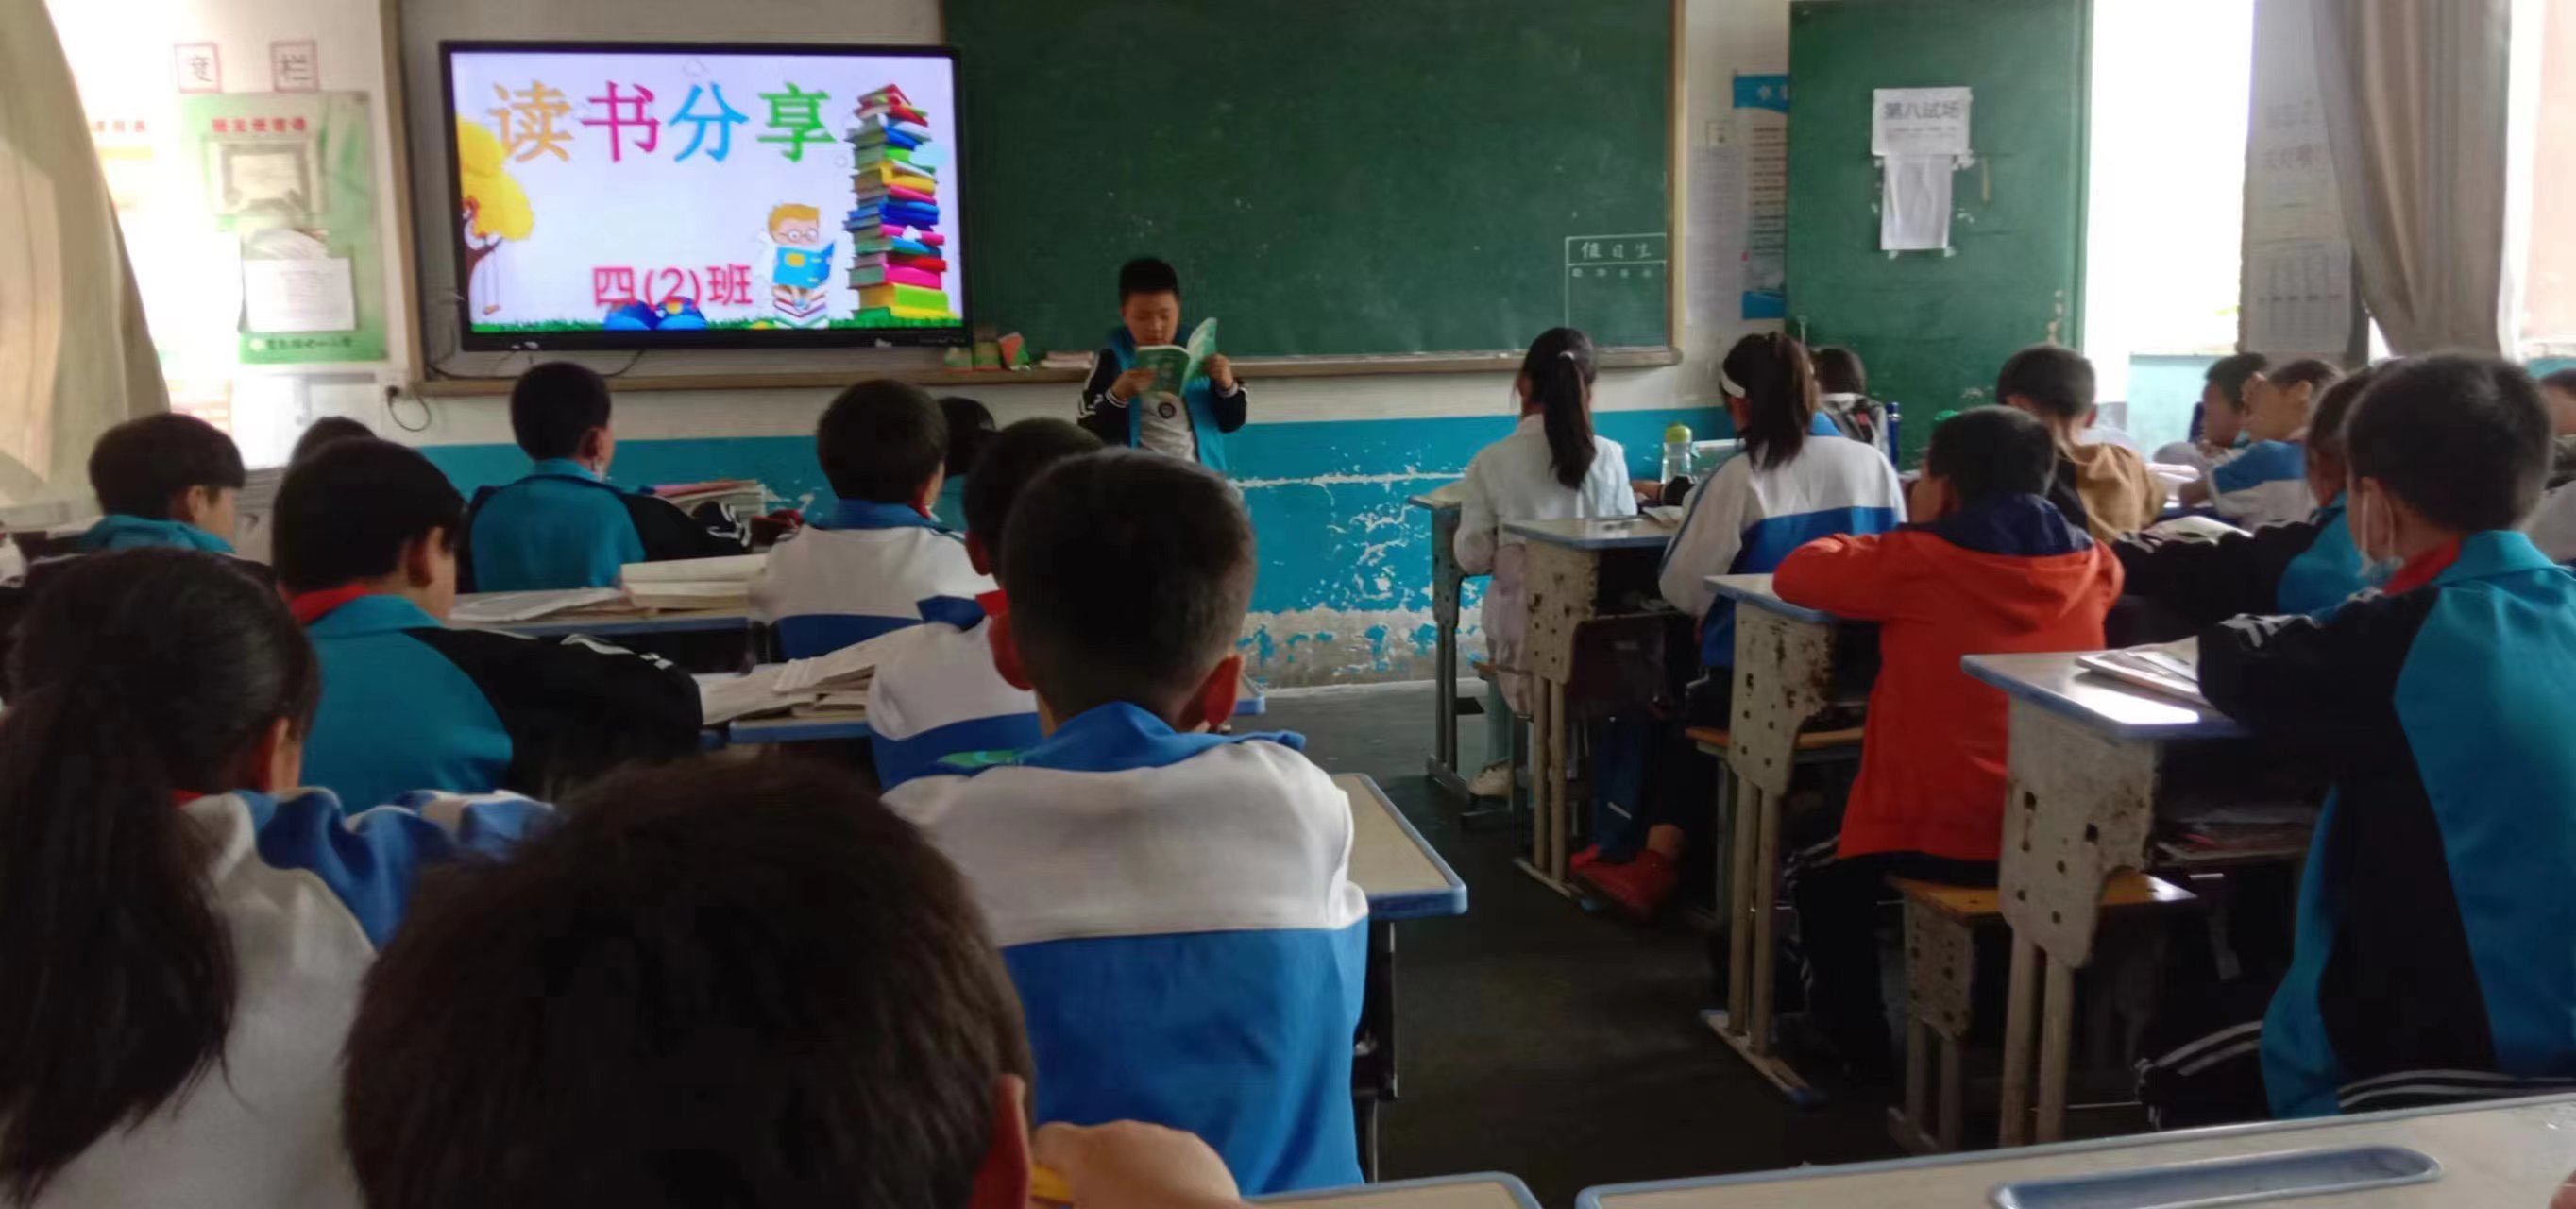 汉阴县双乳镇中心小学开展“世界读书日”系列活动